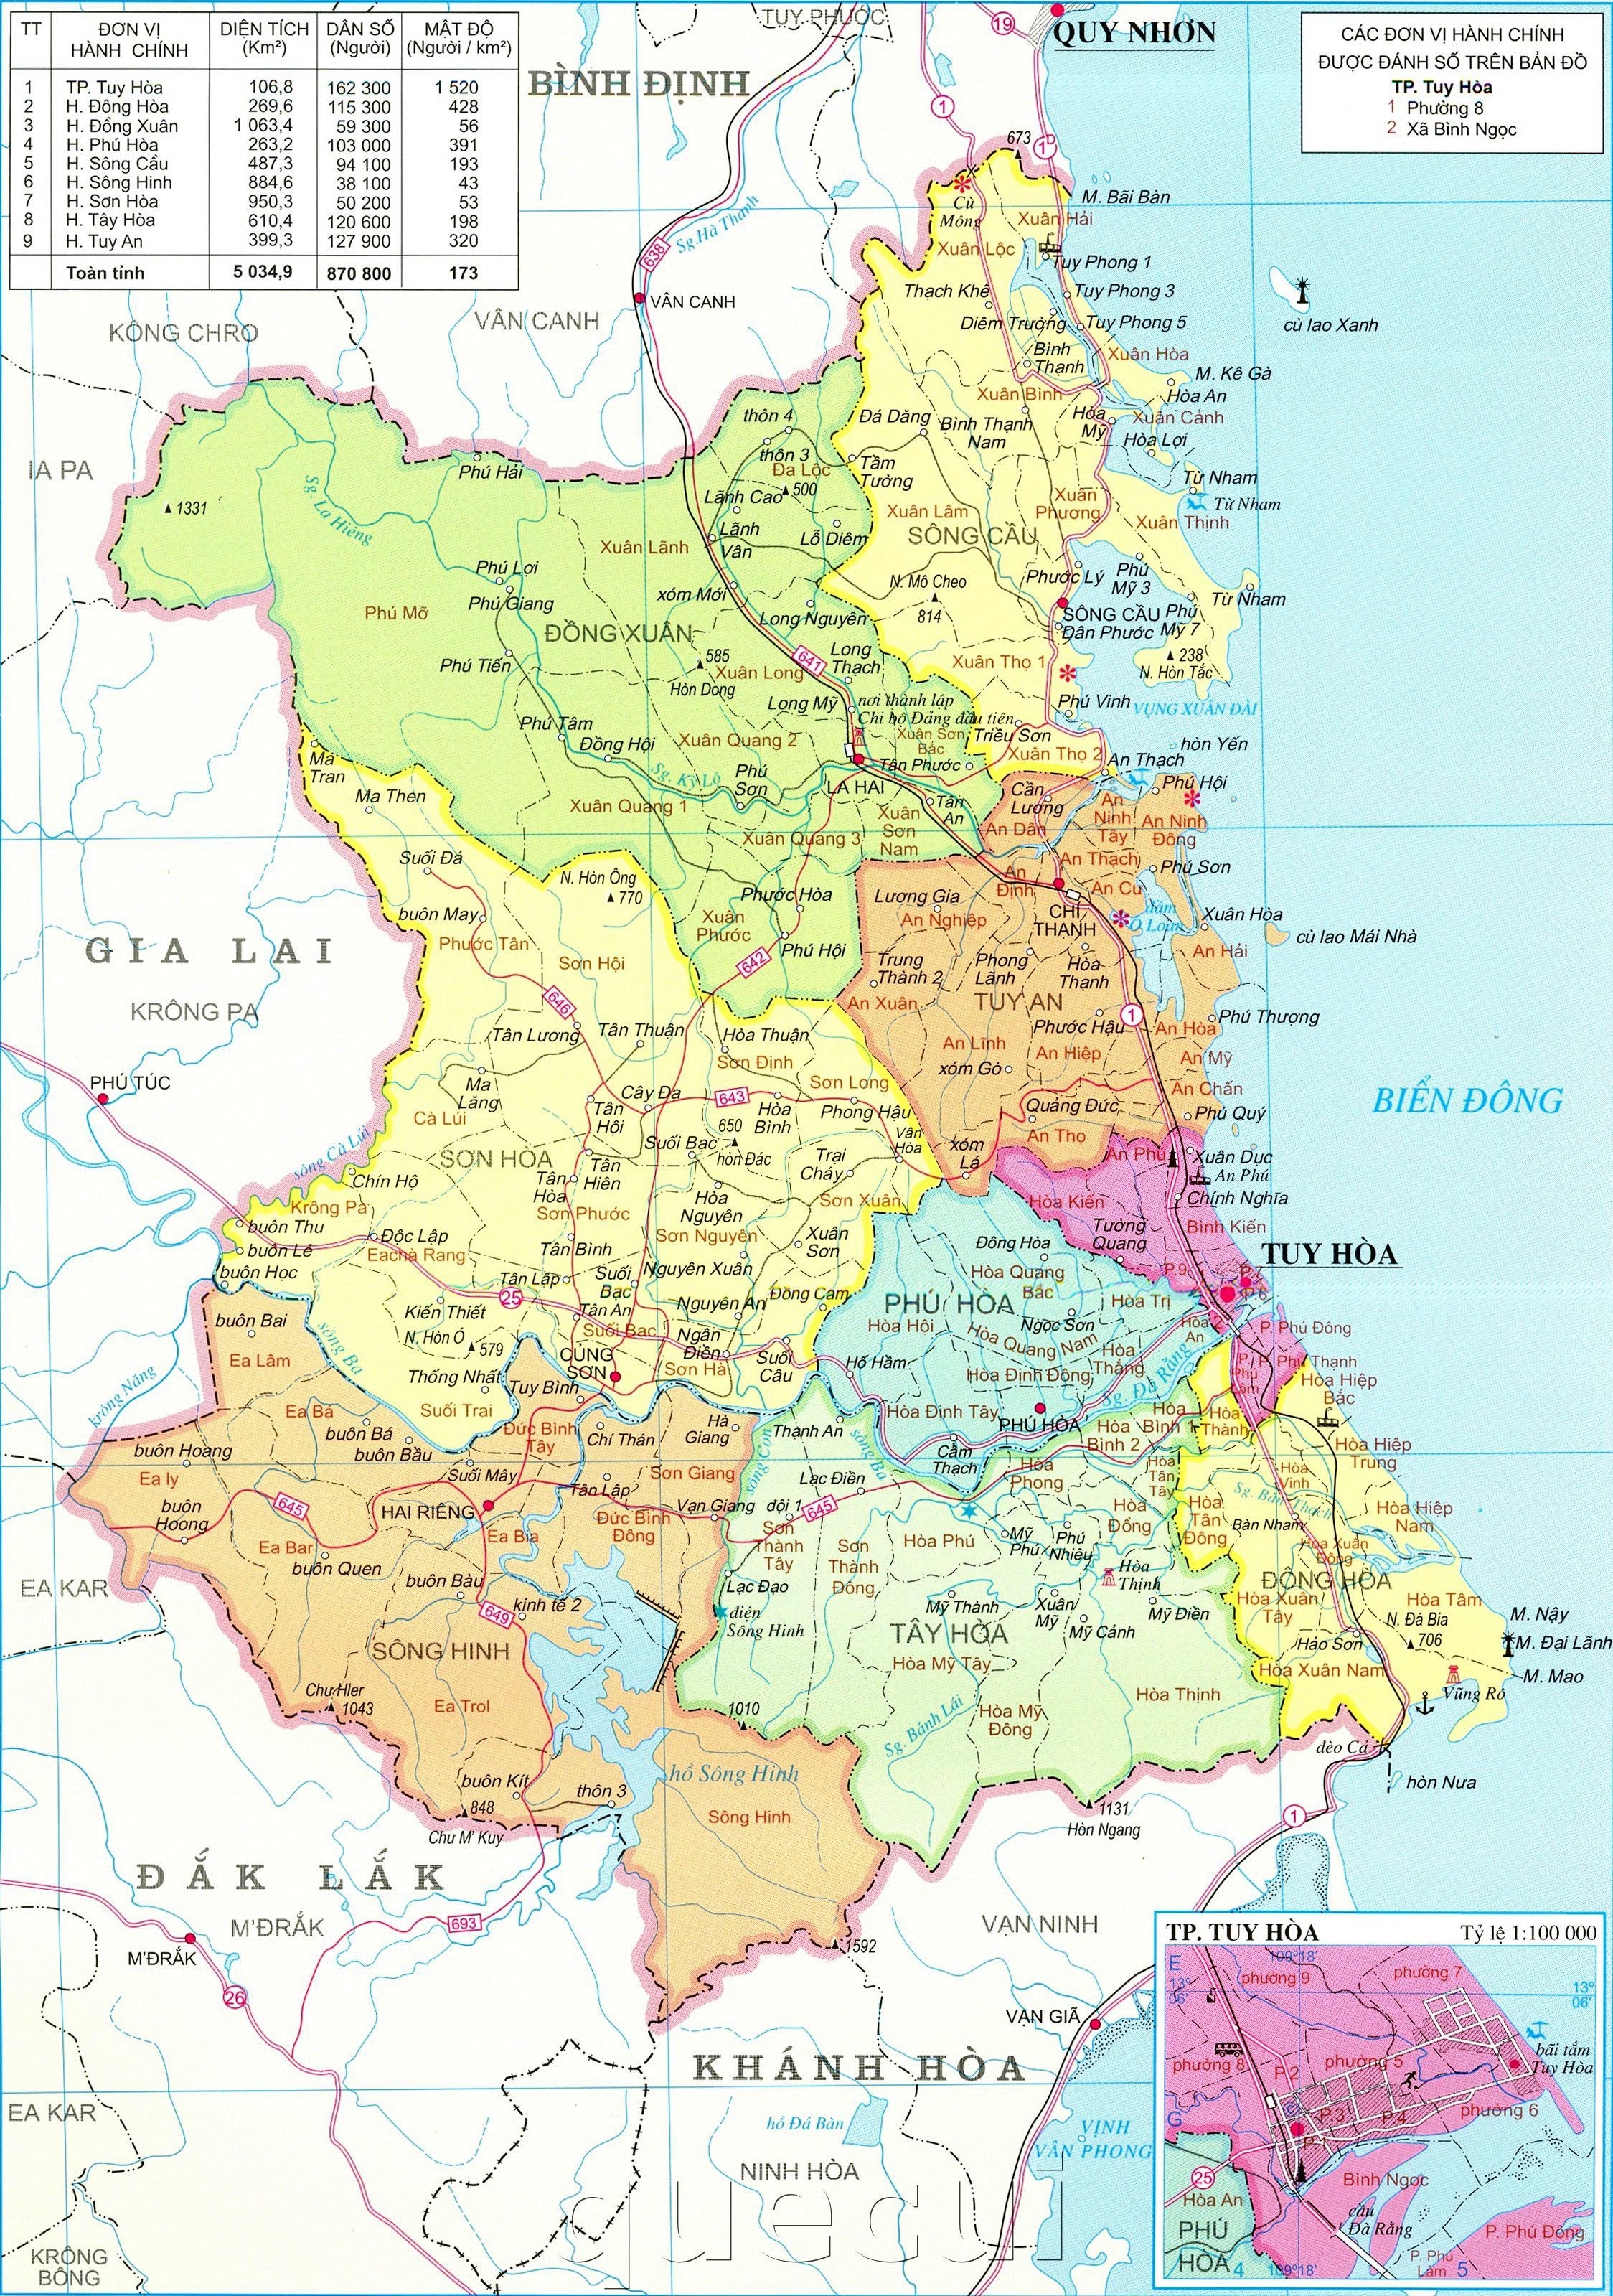 Cùng khám phá Phú Yên rộng lớn với bản đồ khổ lớn phóng to mới nhất. Từ bờ biển tuyệt đẹp đến các địa điểm du lịch nổi tiếng, tất cả đều được hiển thị rõ ràng trên bản đồ này. Bạn sẽ không còn cảm thấy lạc lối nữa.